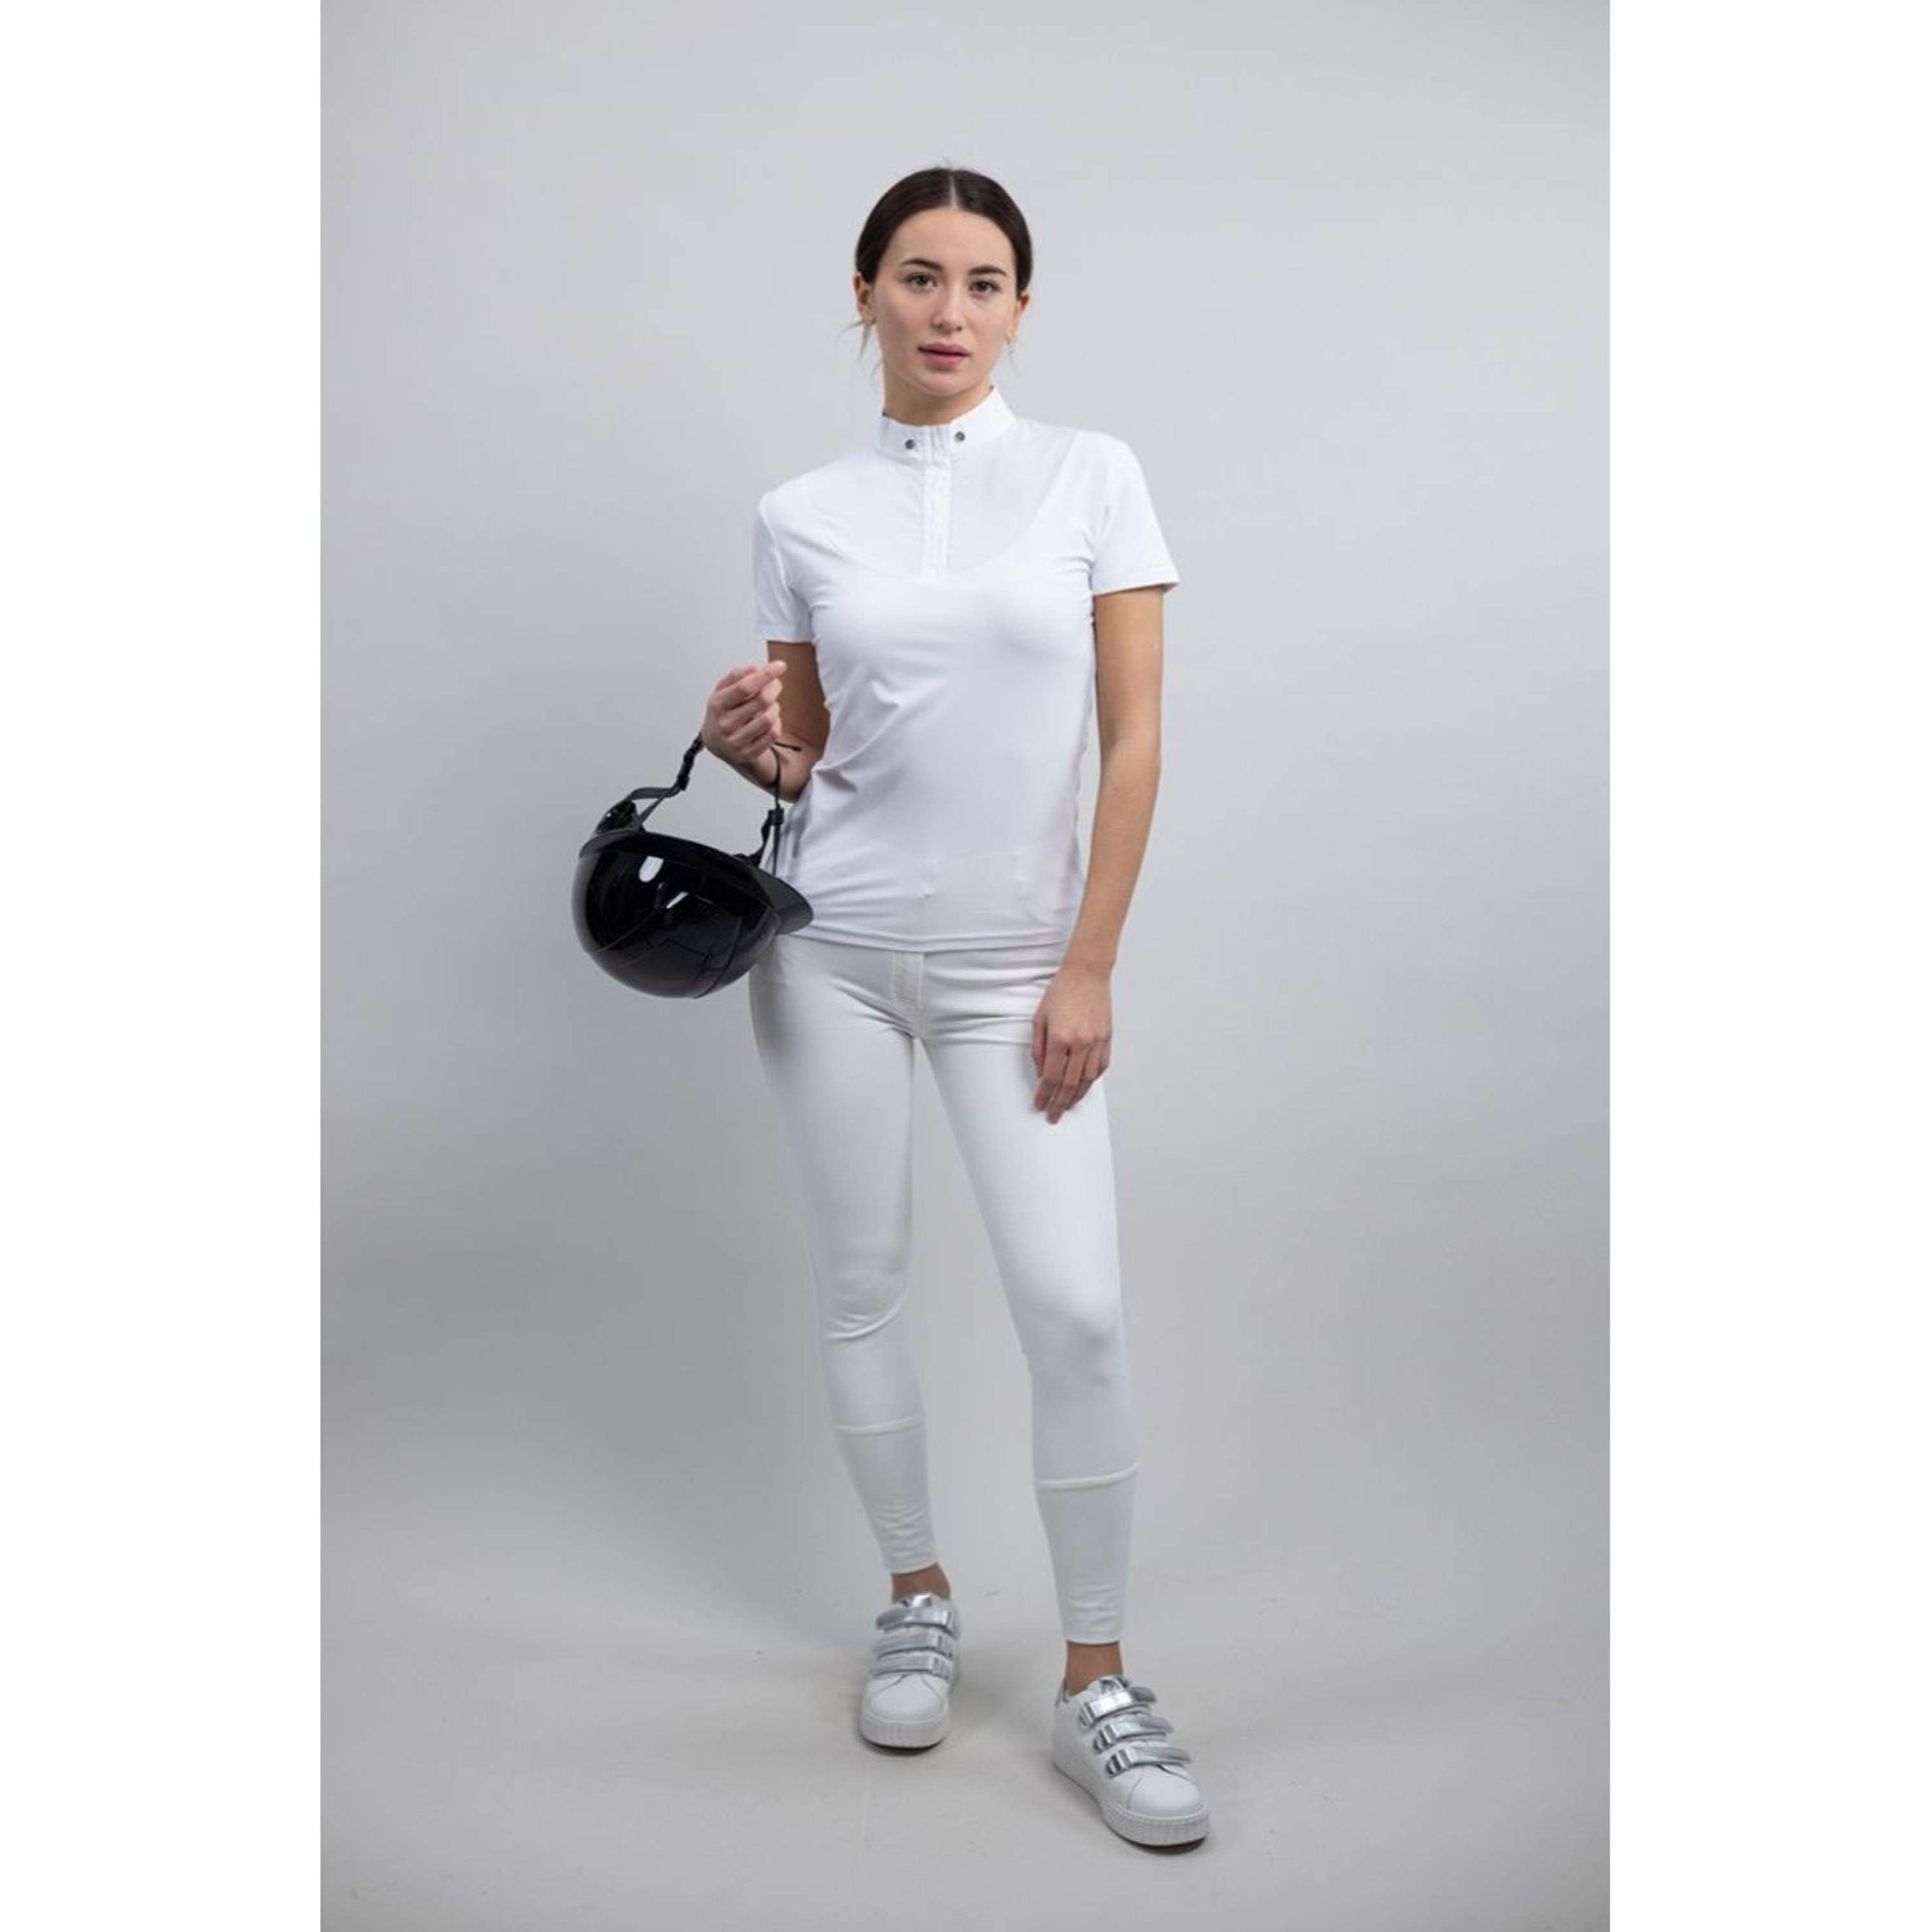 Harcour T-shirt de Concours Pirma Femme Blanc